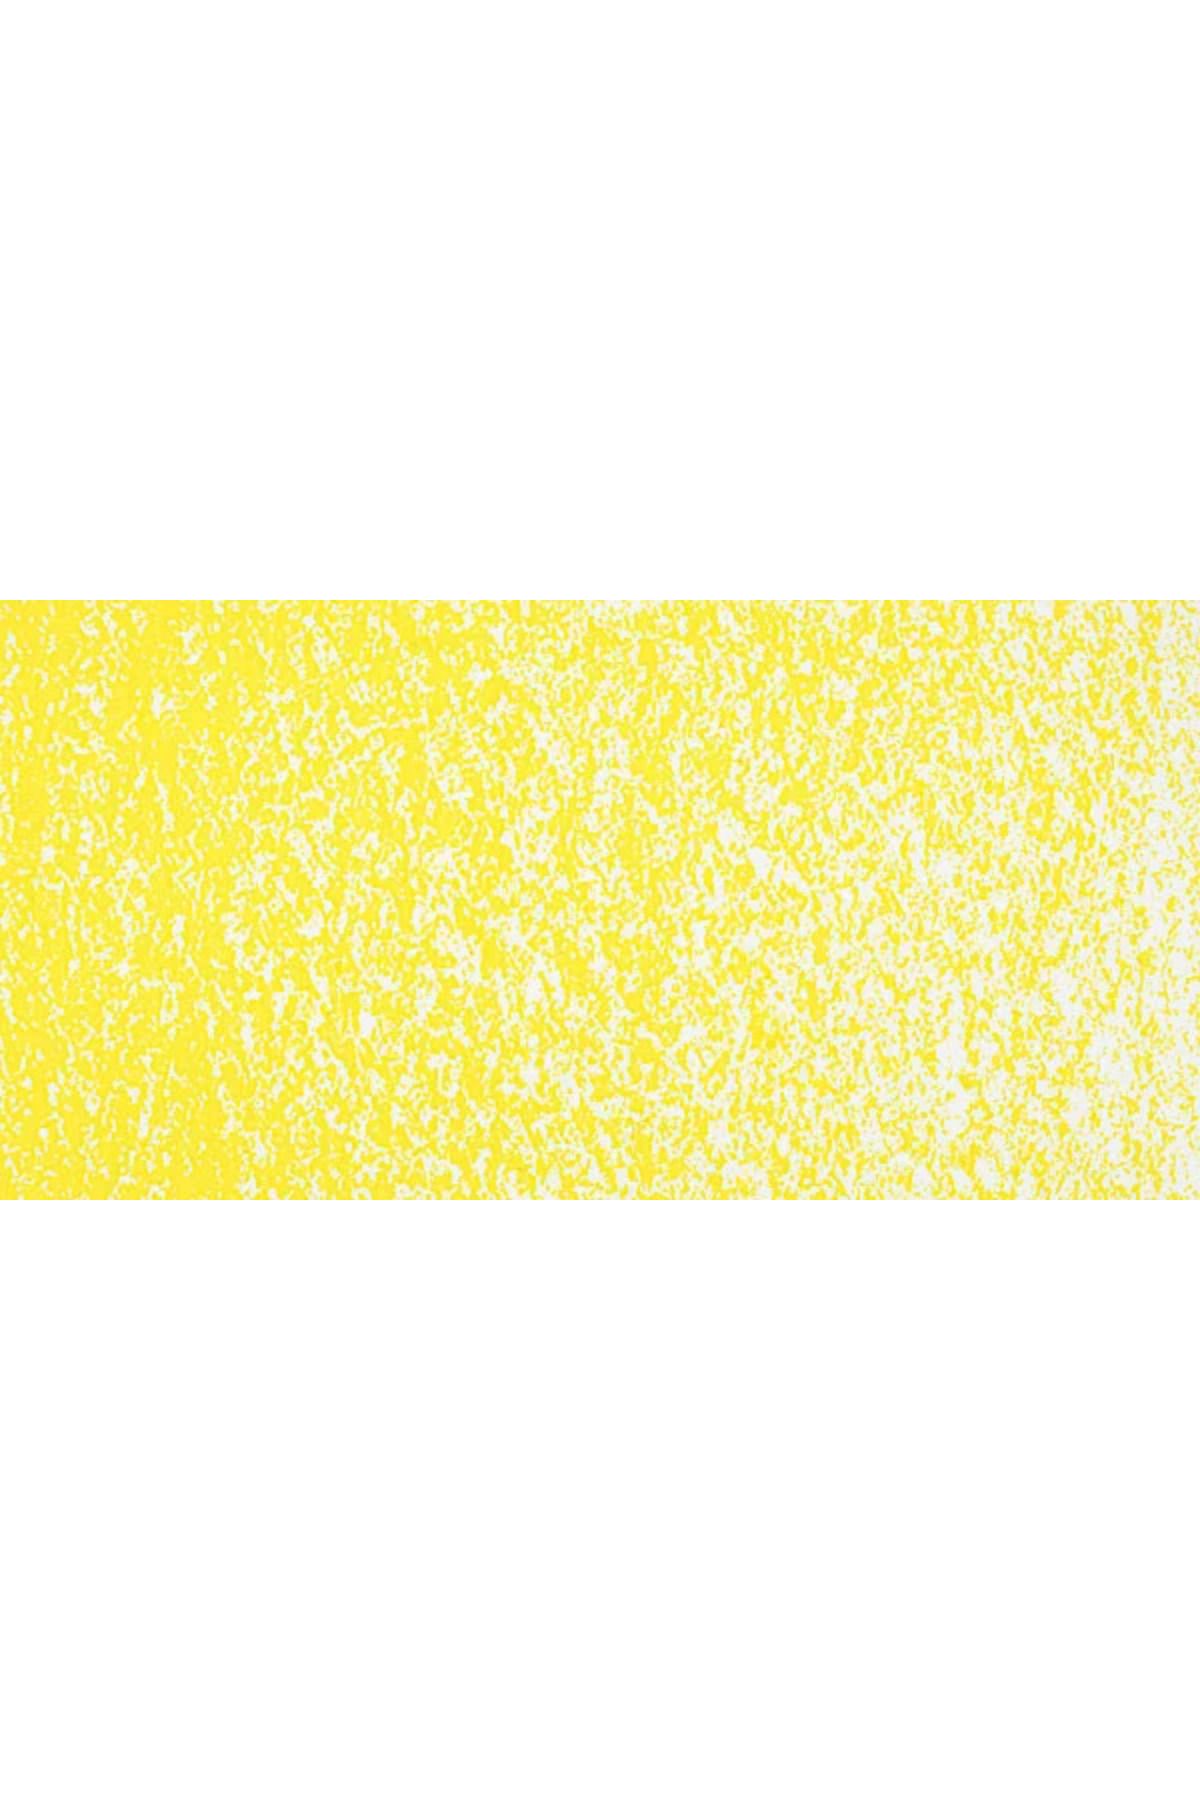 Sennelier Yağlı Pastel 019 Lemon Yellow